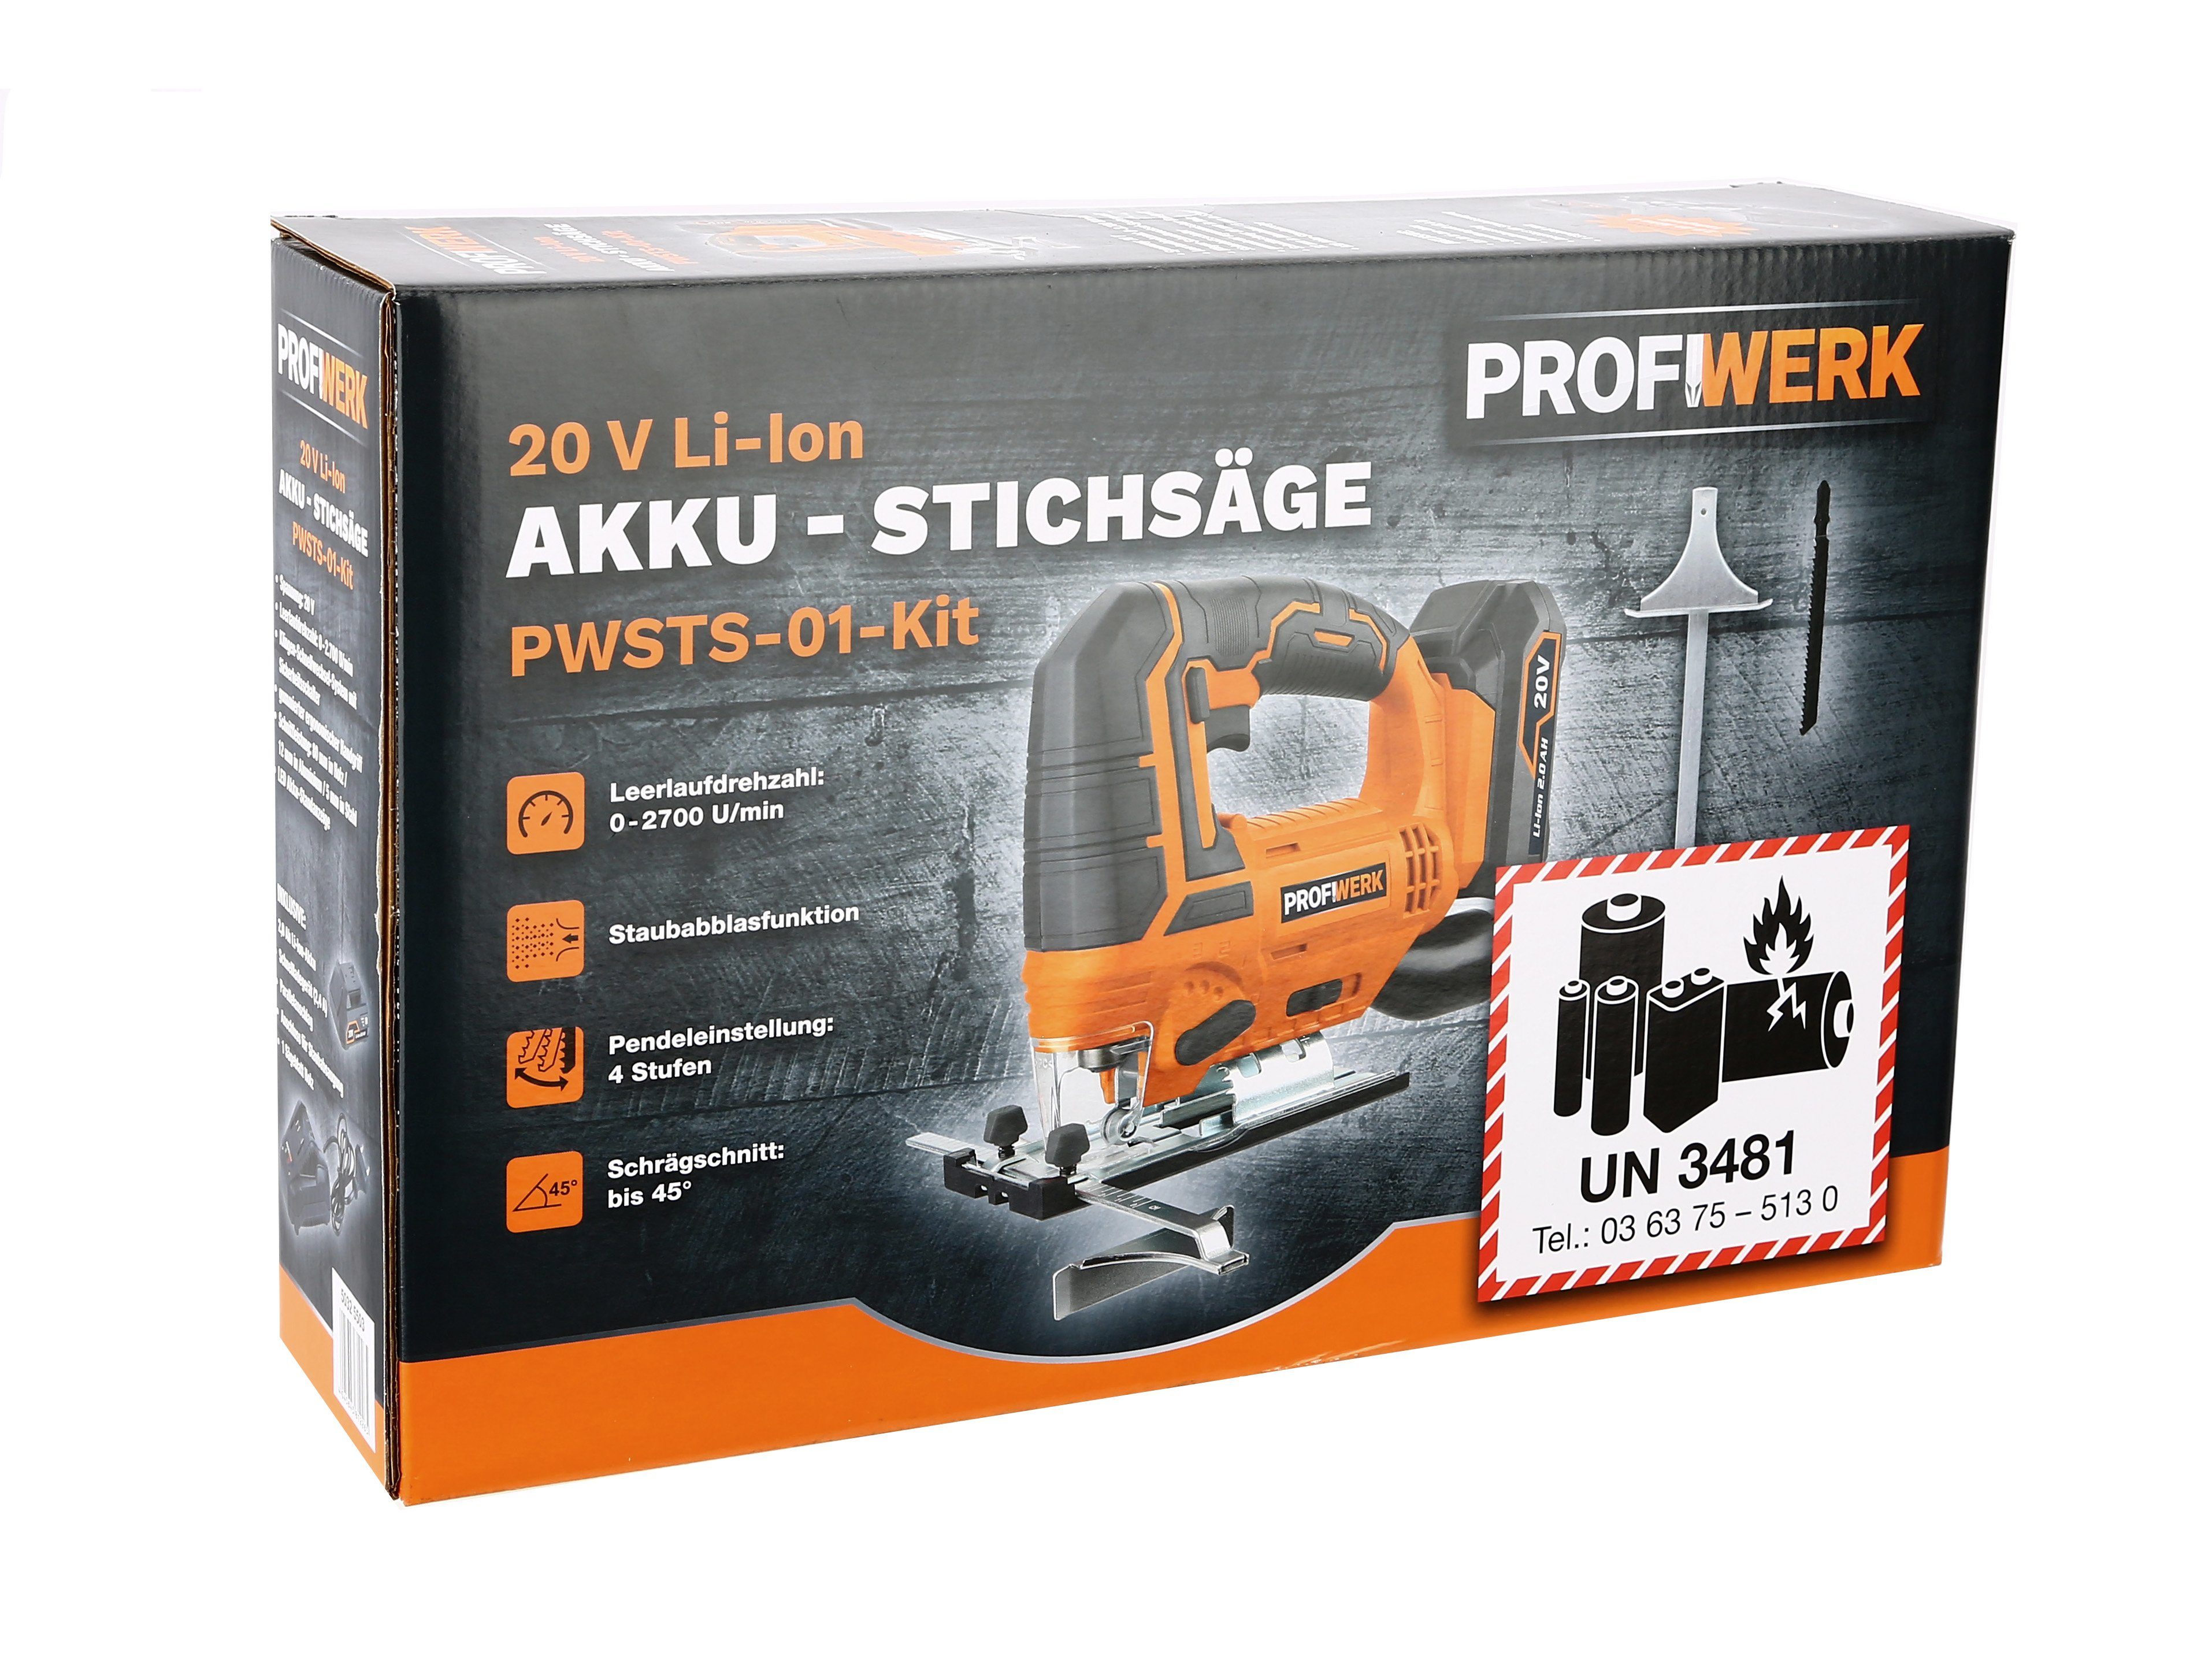 80/12/5 PWSTS-01-Kit20V, Schnittleistung Netzteil Profiwerk Akku-Stichsäge mm, Akku, 2,0Ah